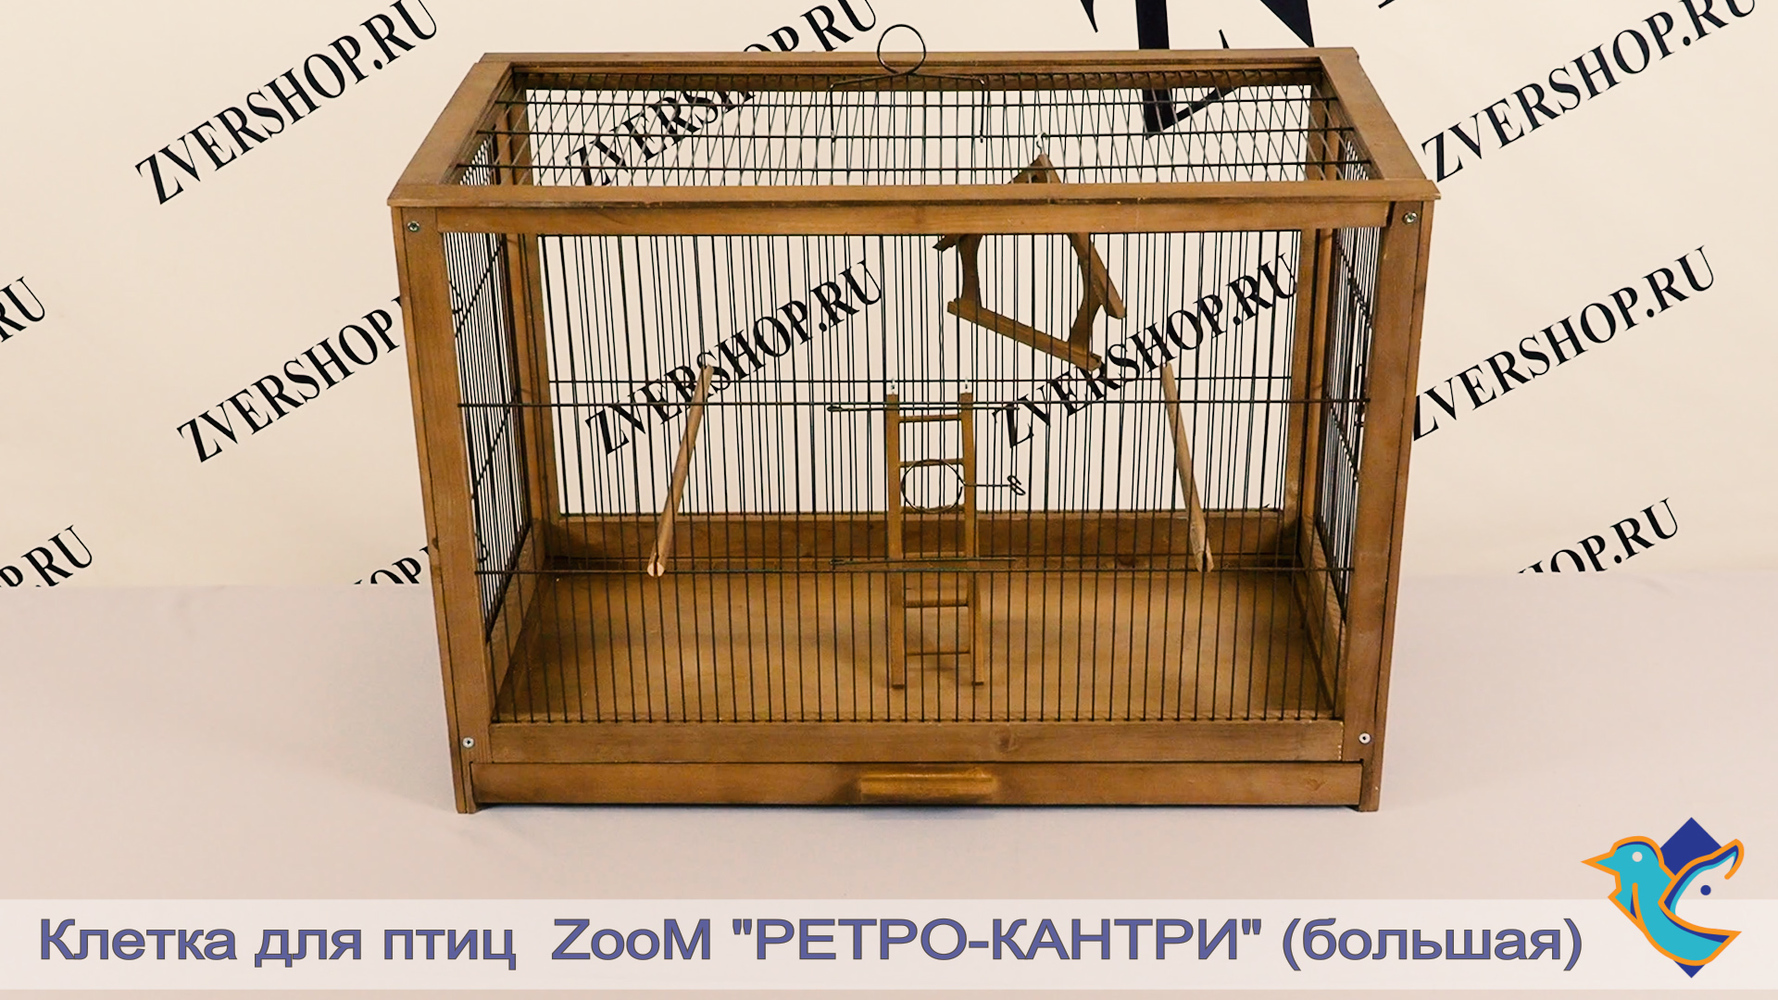 Фото Клетка ZooM для птиц деревянная "Ретро - кантри" большая палисандр 71*33,5*51 см 